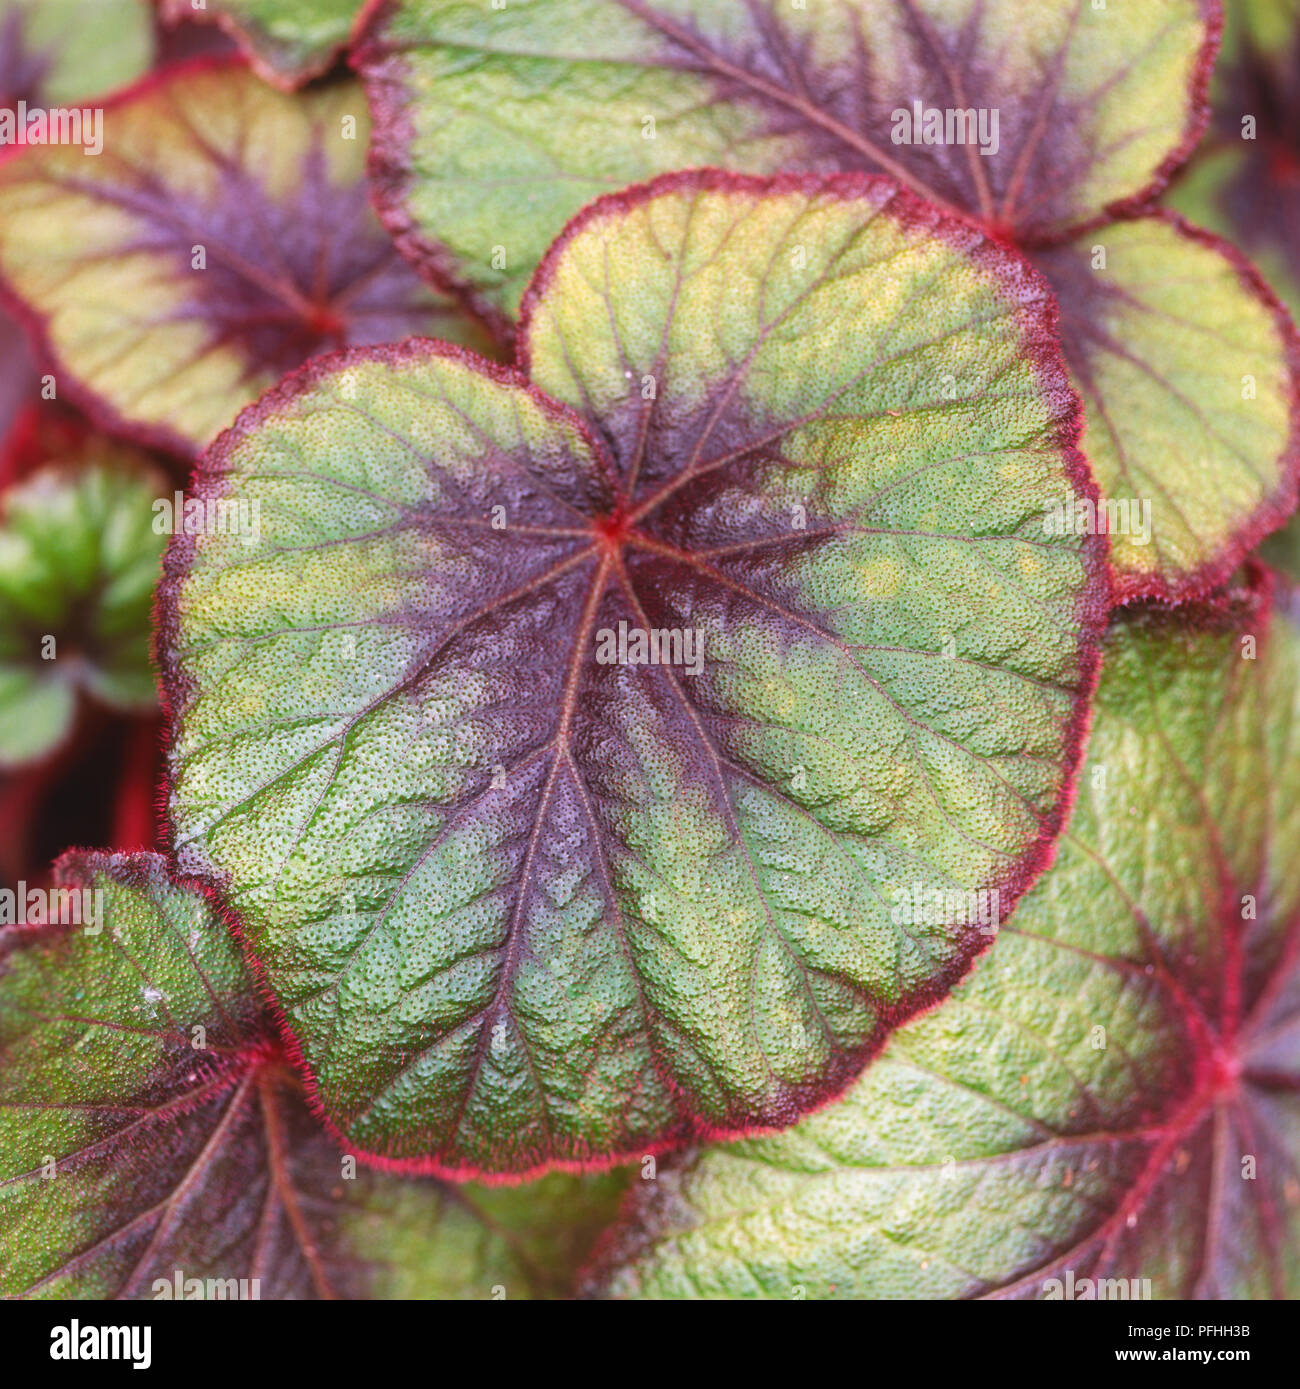 Begonia 'Bettina Rothschild', montage vertical provient des feuilles hybride très visible avec des feuilles rouge vif. Banque D'Images